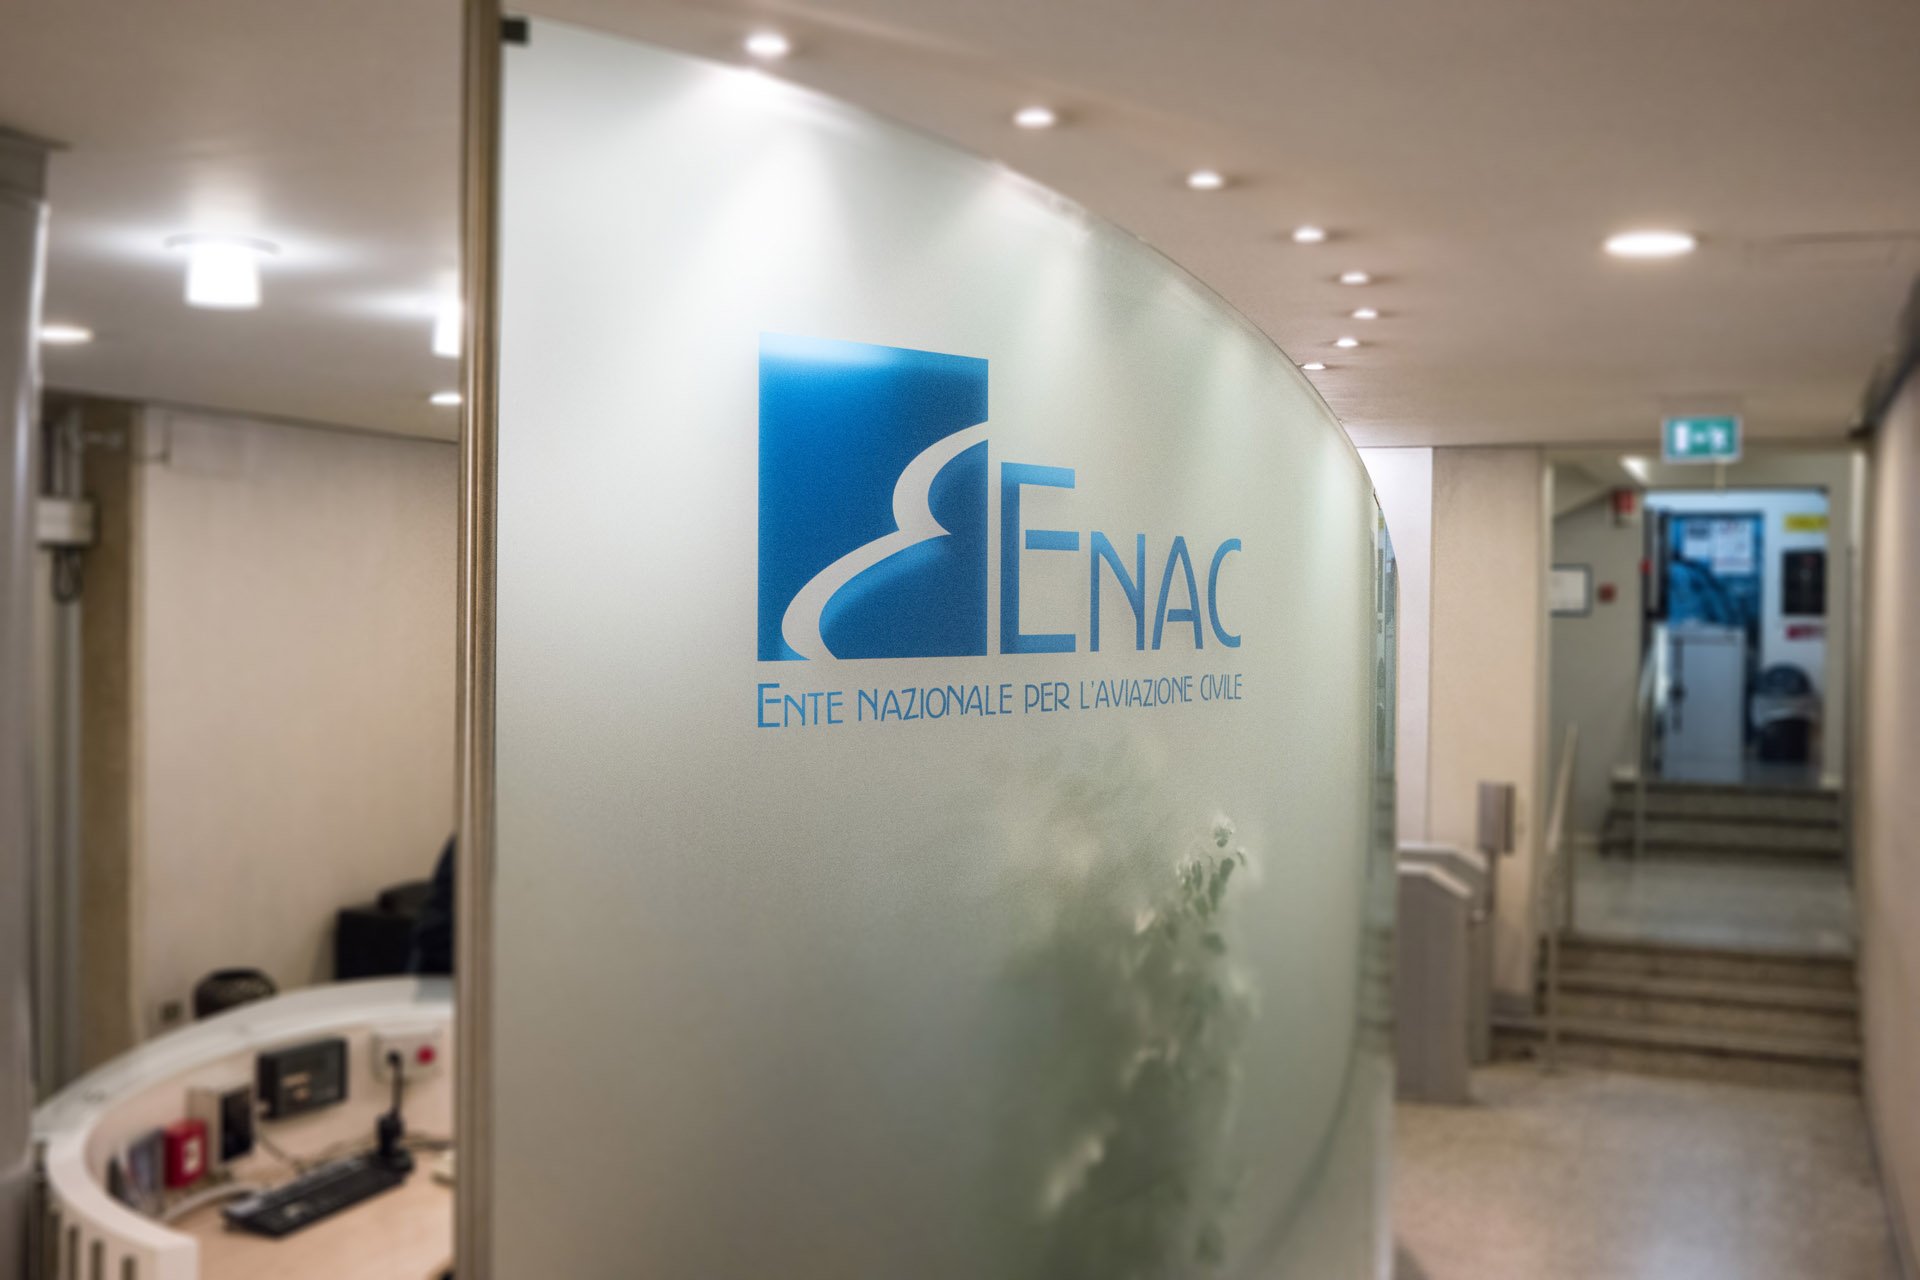 ENAC (Ente nazionale per l’aviazione Civile)